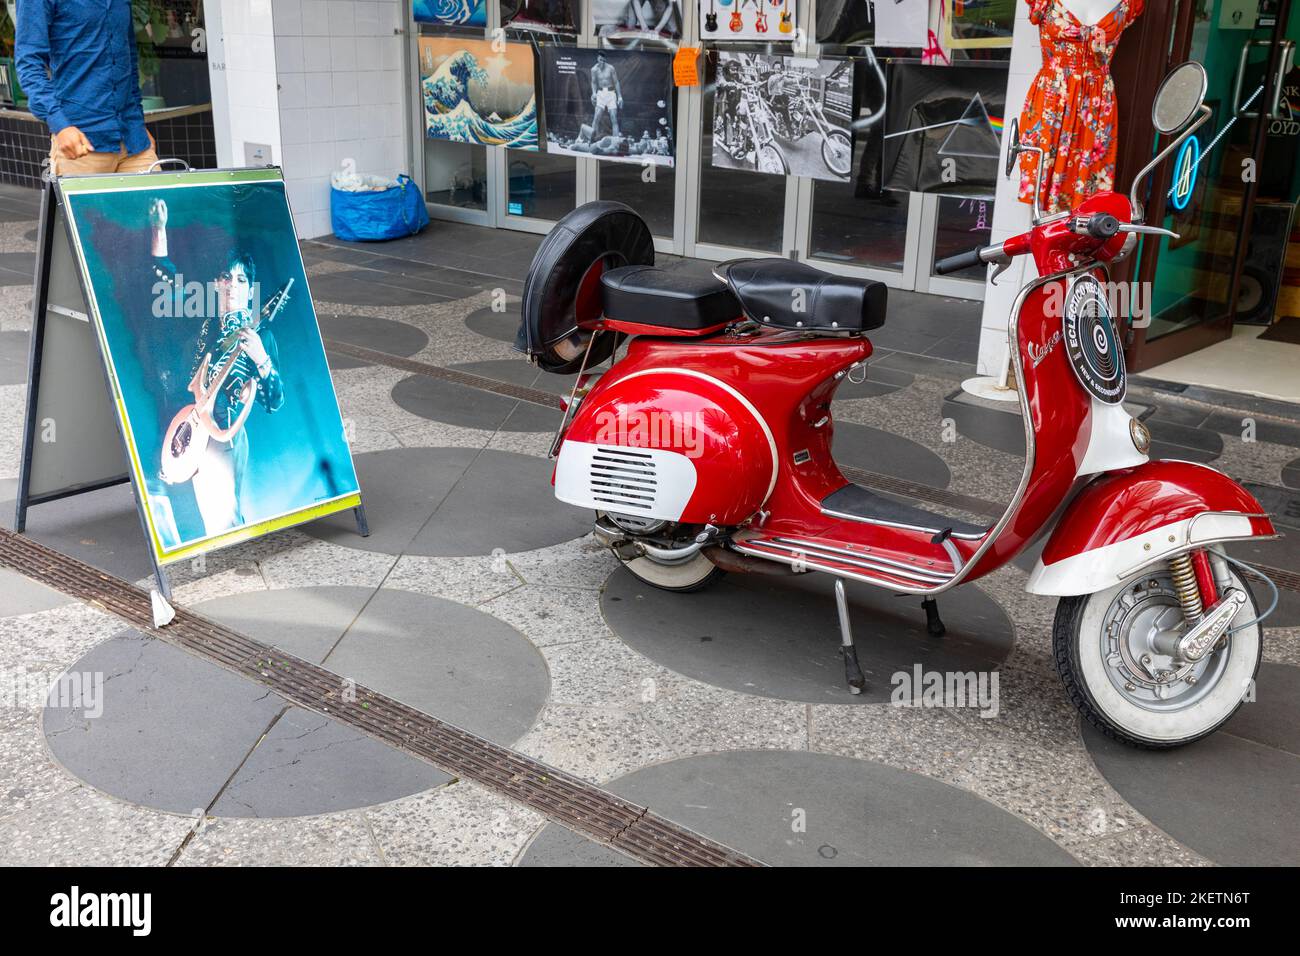 St Kilda Melbourne, negozio retrò degli anni '60 e '70 con scooter all'esterno e foto del musicista Prince,Victoria,Australia Foto Stock